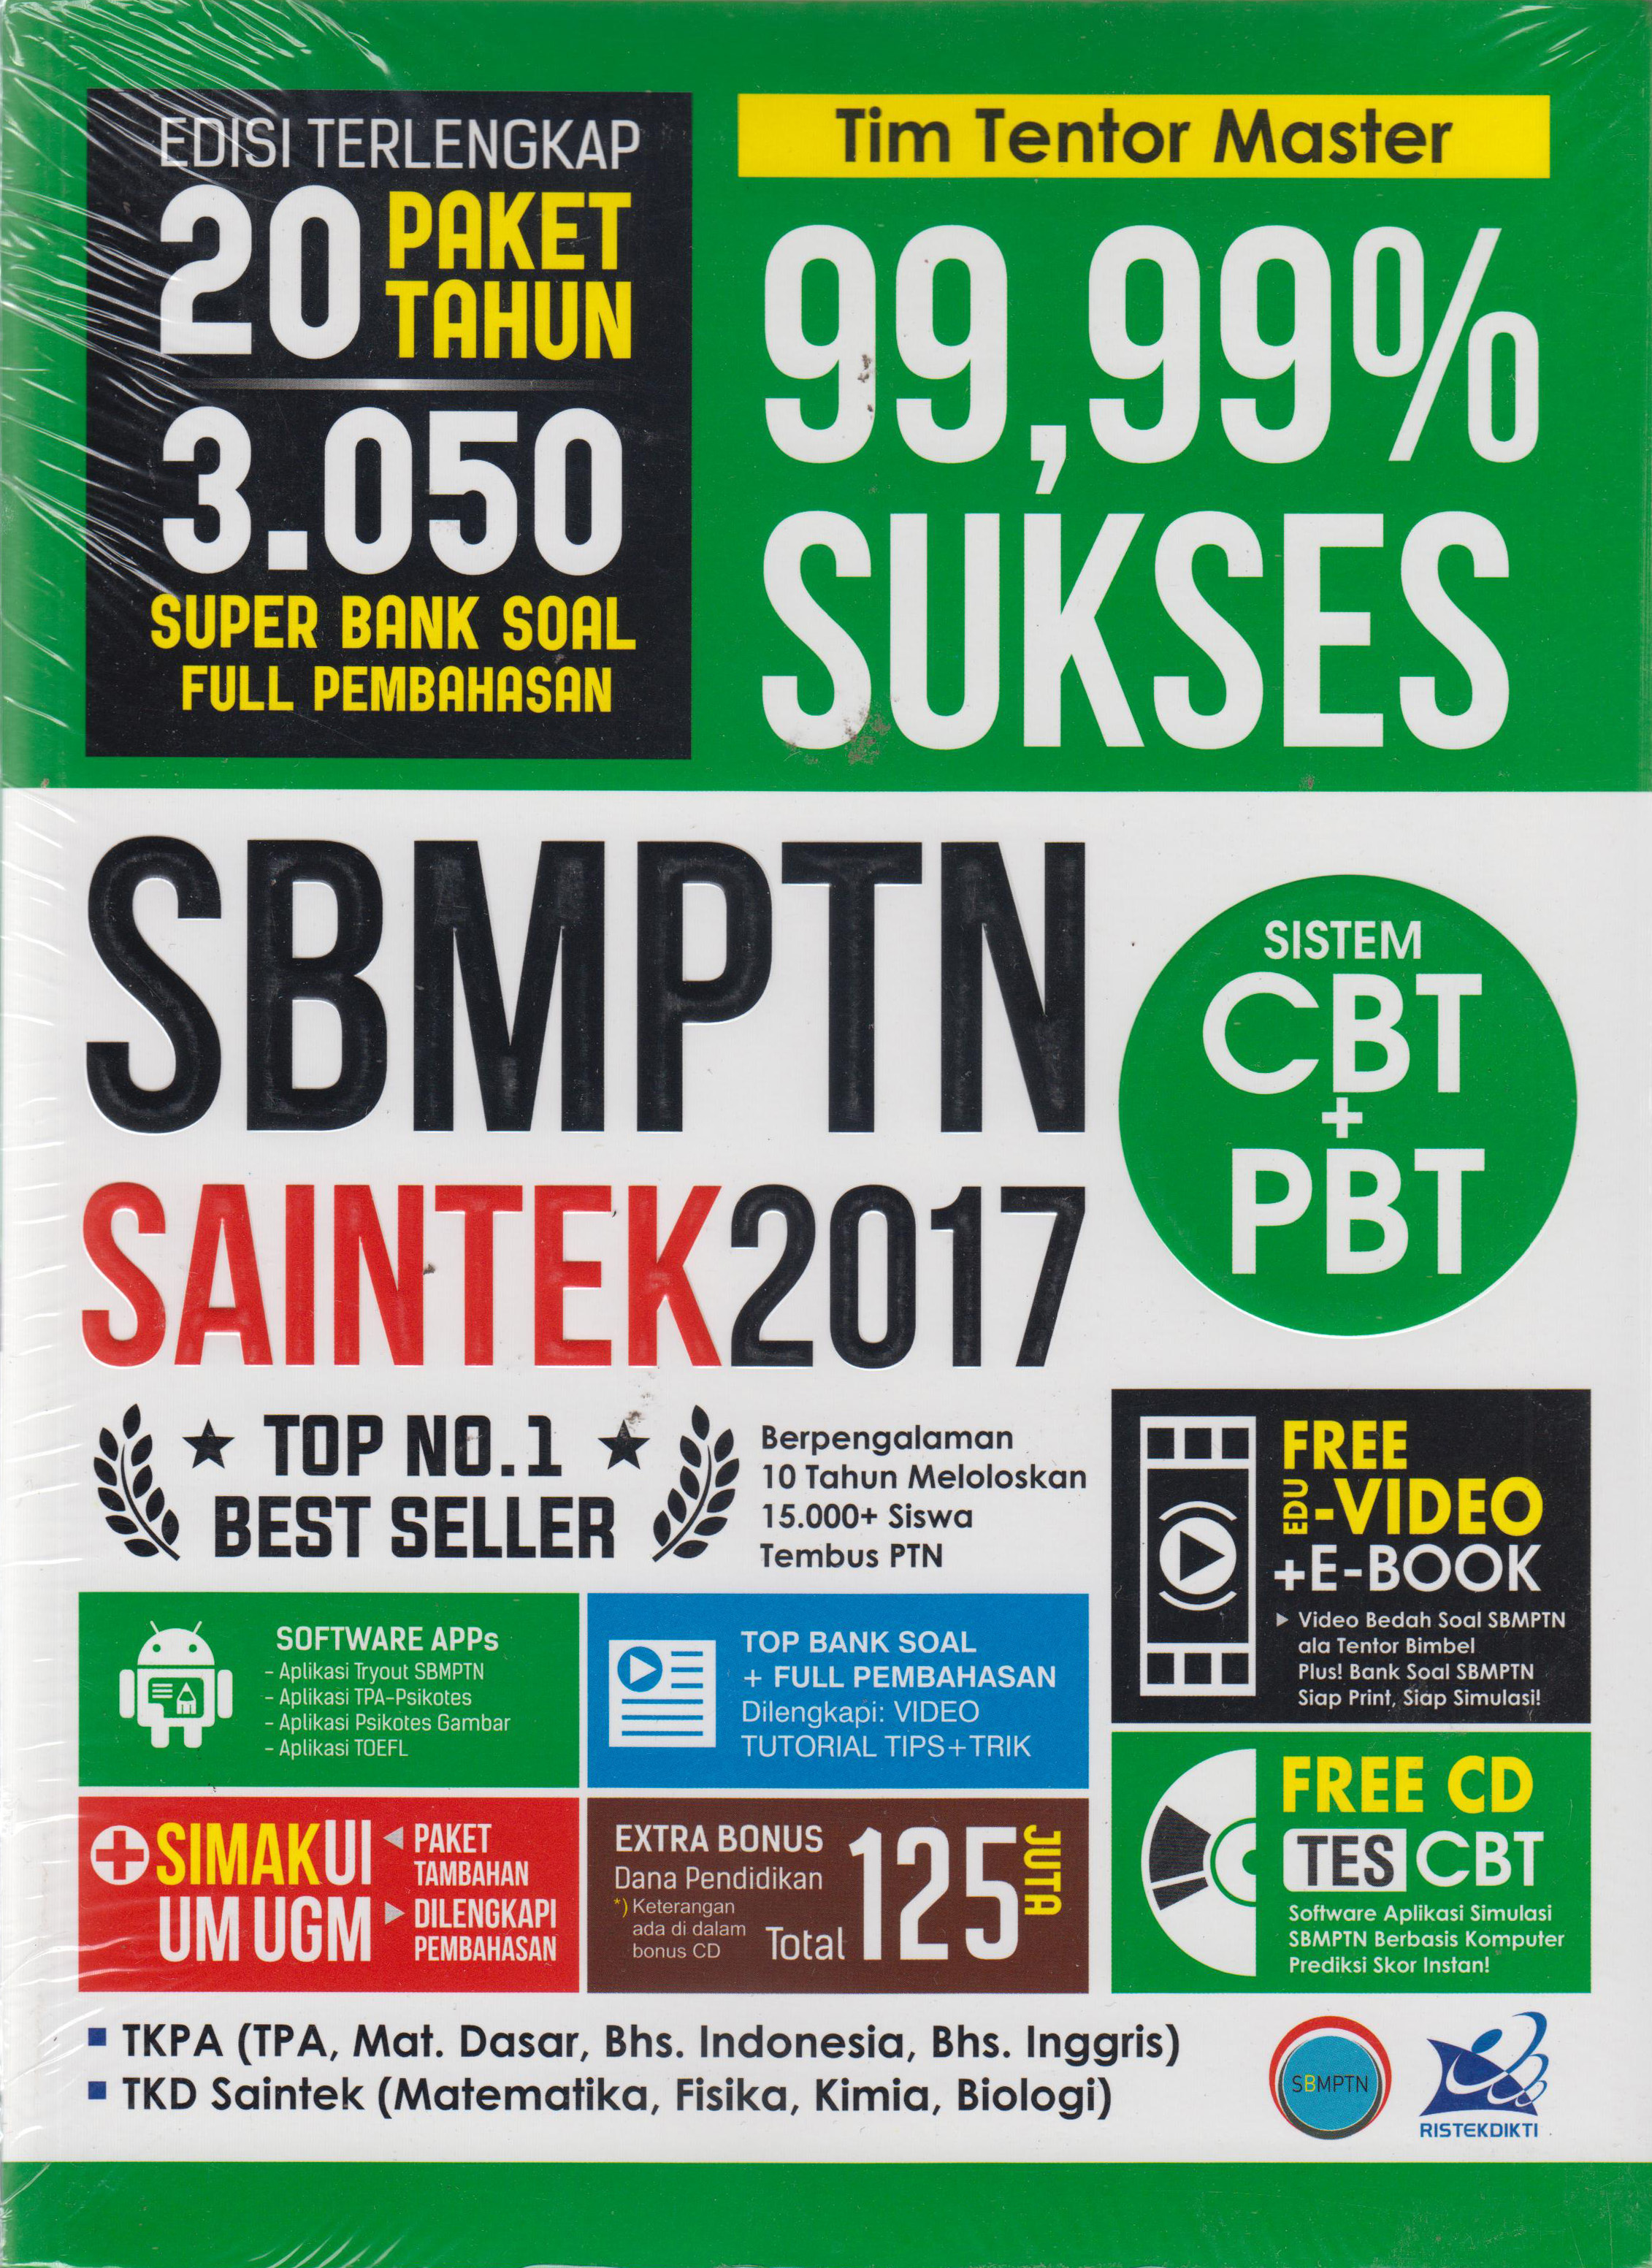 SBMPTN SAINTEK 2017 99 99 PERSEN SUKSES en